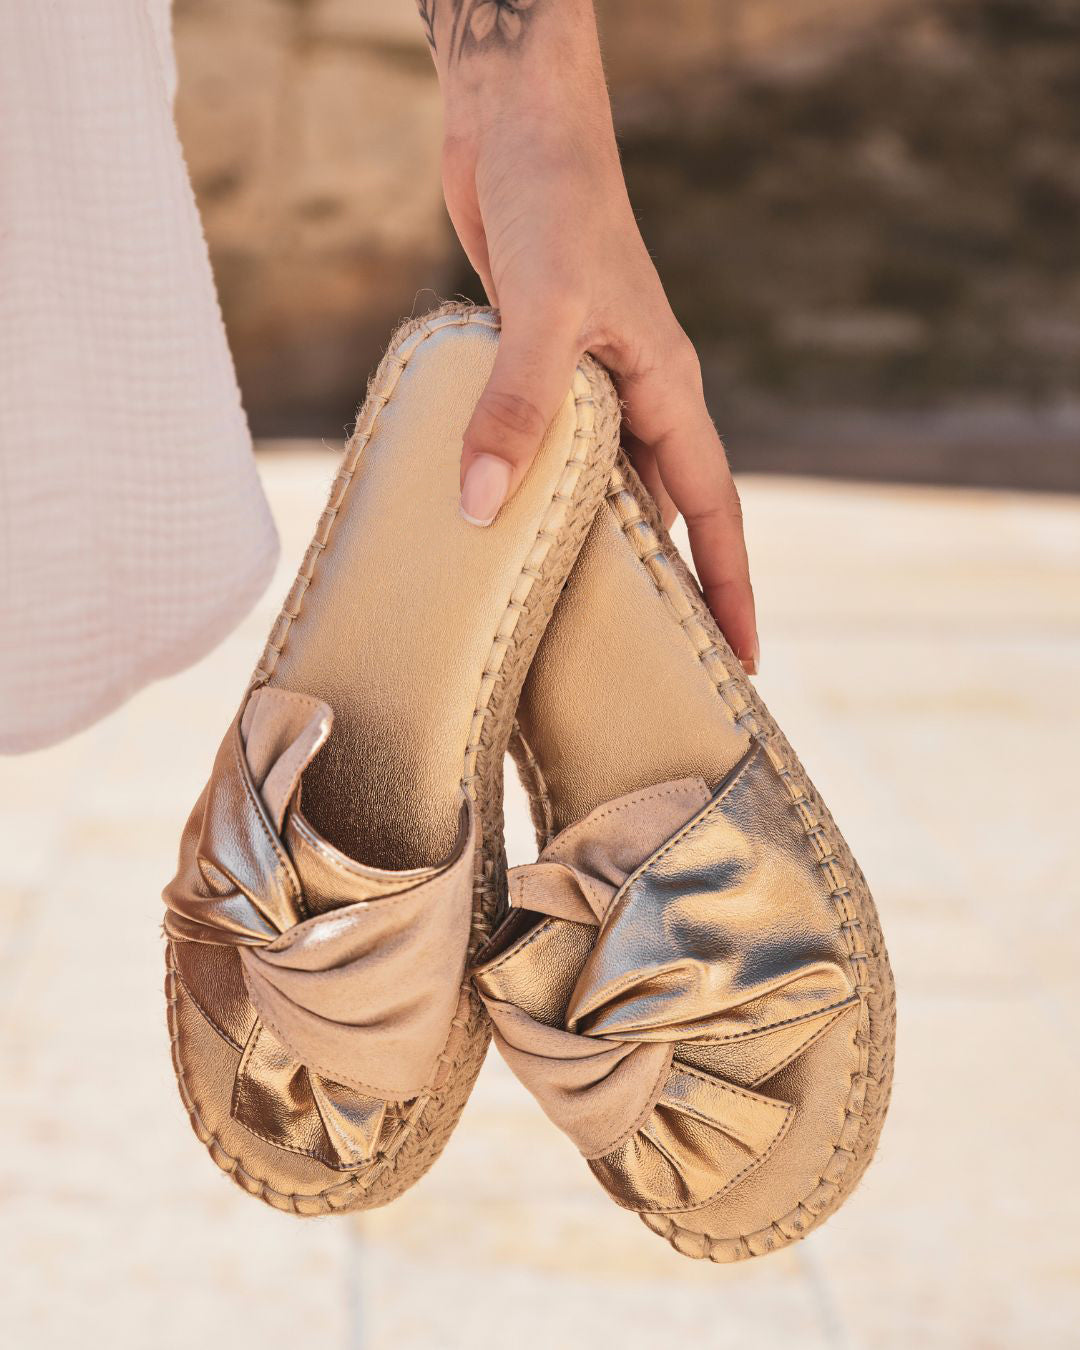 Sandalia de plataforma para mujer cómoda en tonos beige y dorado - Pénélope - Casualmode.es